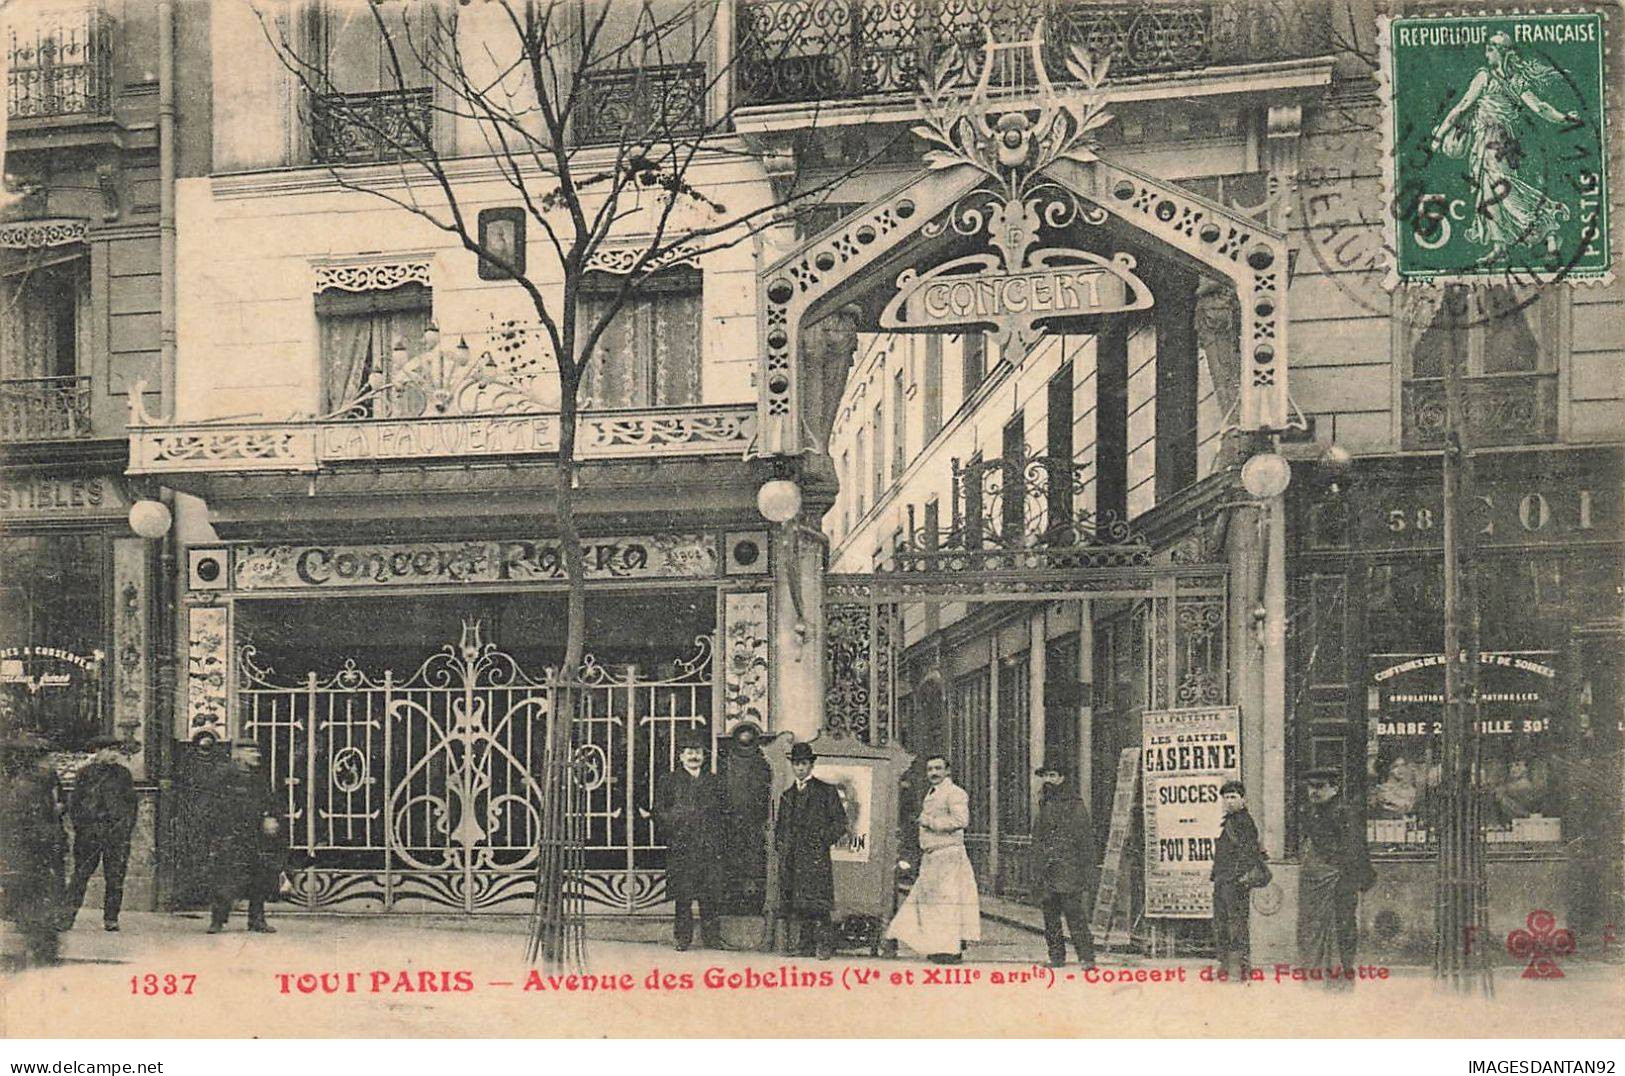 75013 TOUT PARIS #FG56572 AVENUE DES GOBELINS CONCERT DE LA FAUVETTE - District 13